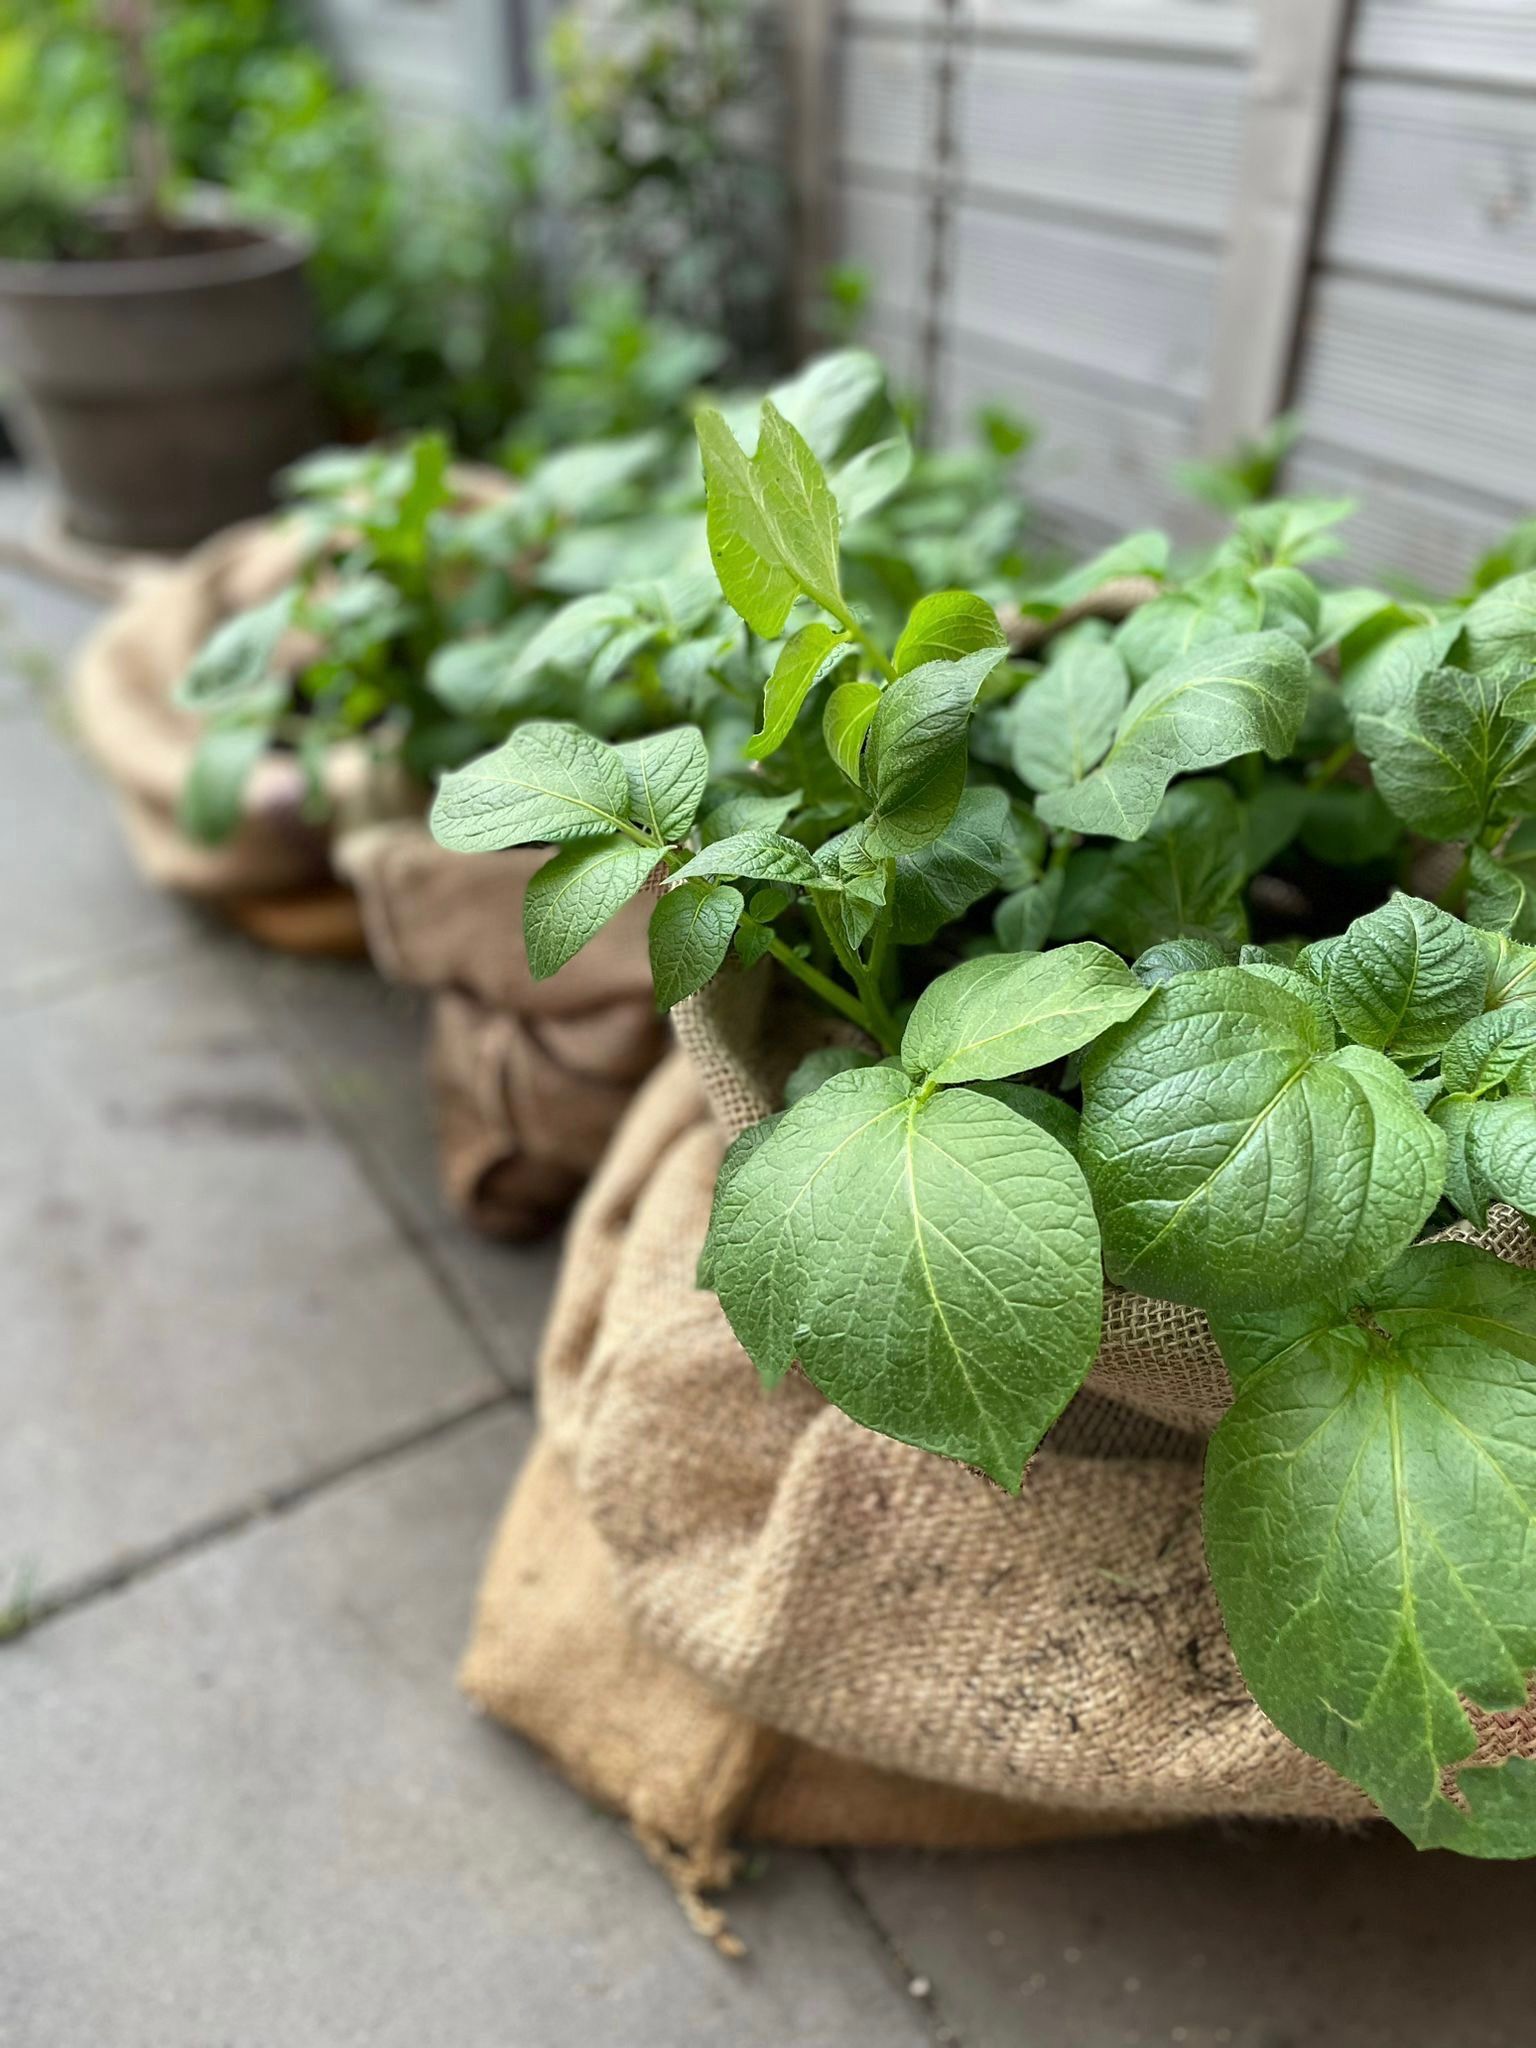 Kartoffeln anpflanzen - auch in kleinen Gärten oder auf dem Balkon